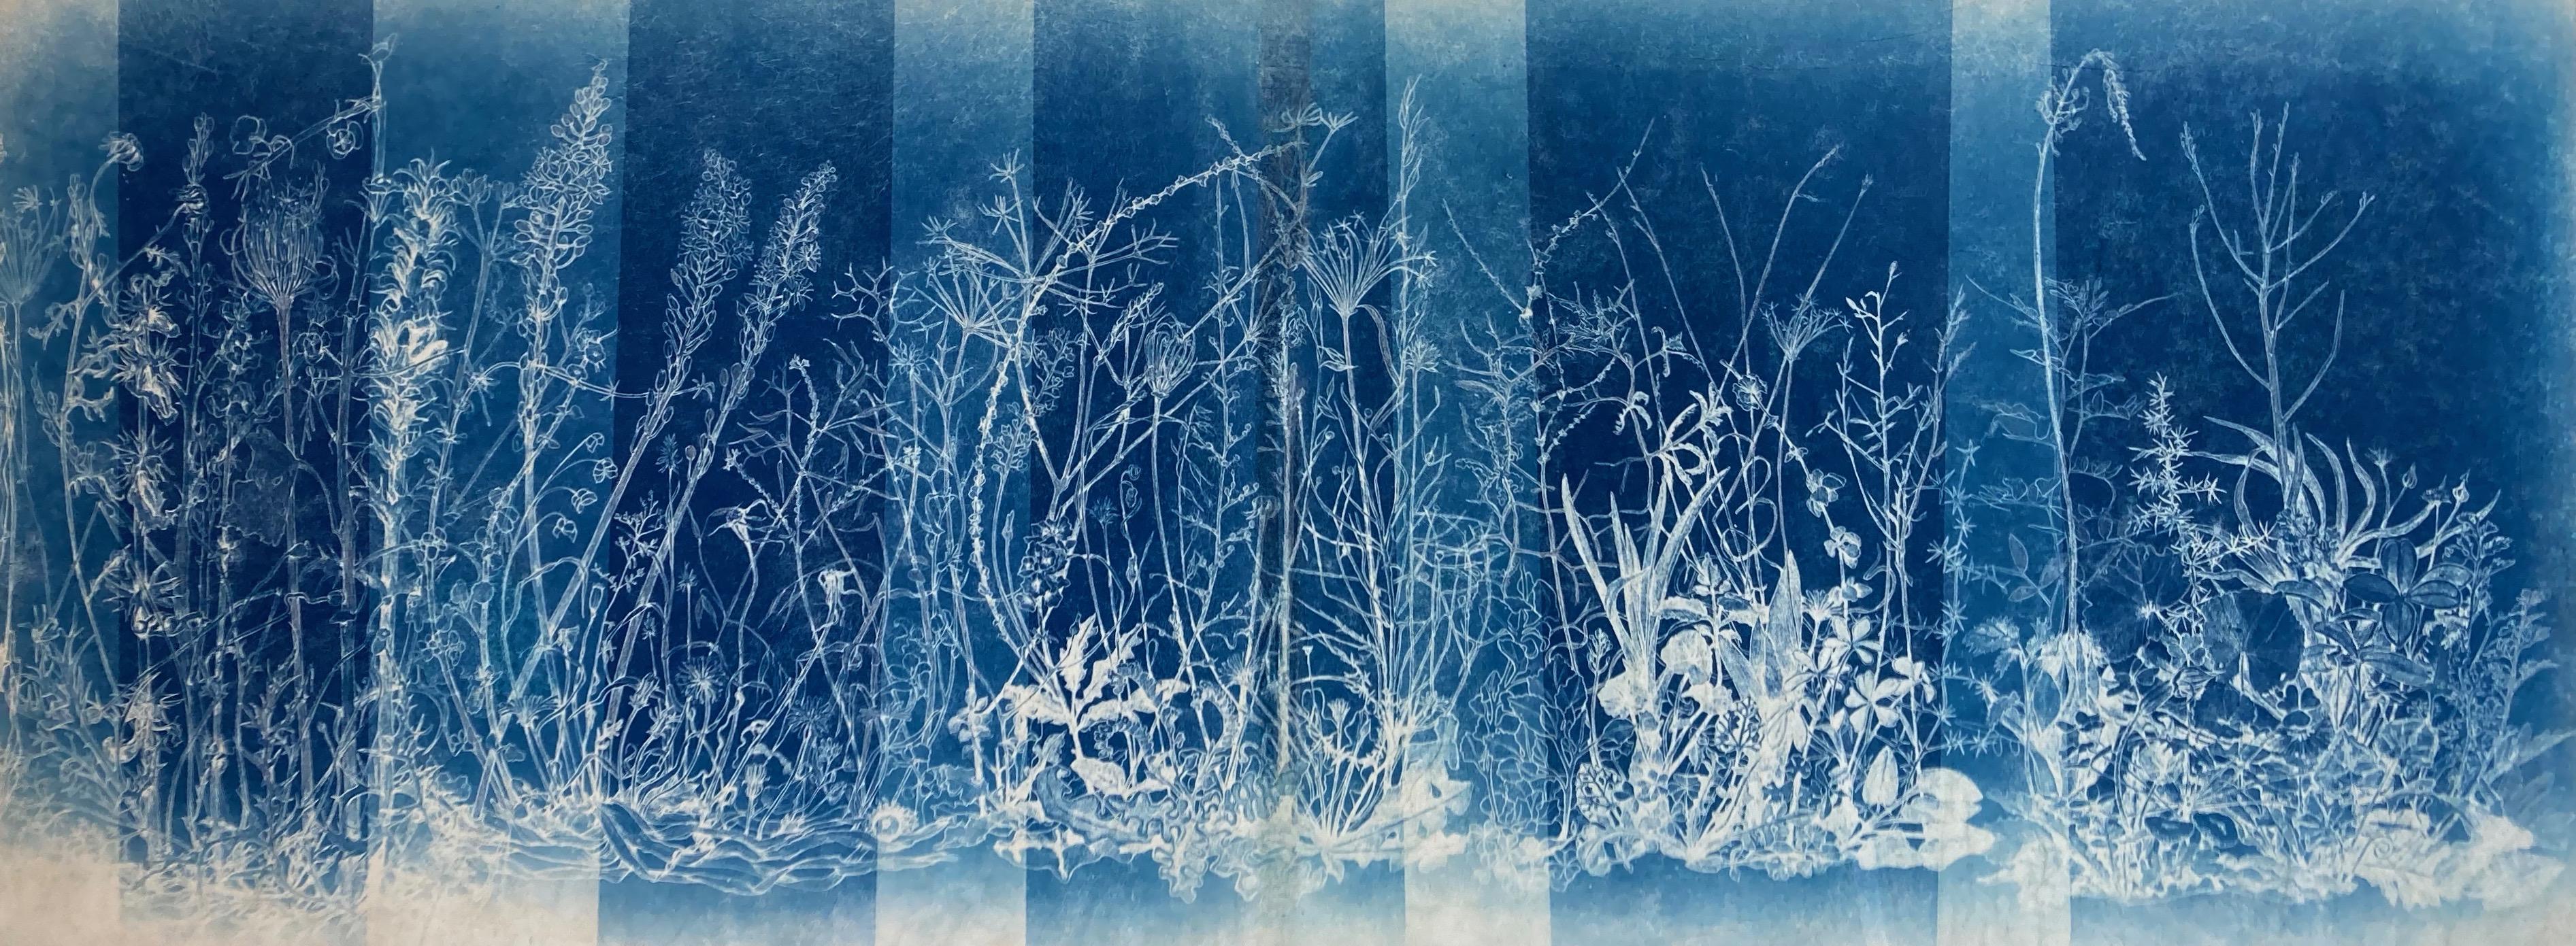 "Mapping the Walk" Étude photographique de fleurs réaliste/abstraite en bleu/blanc